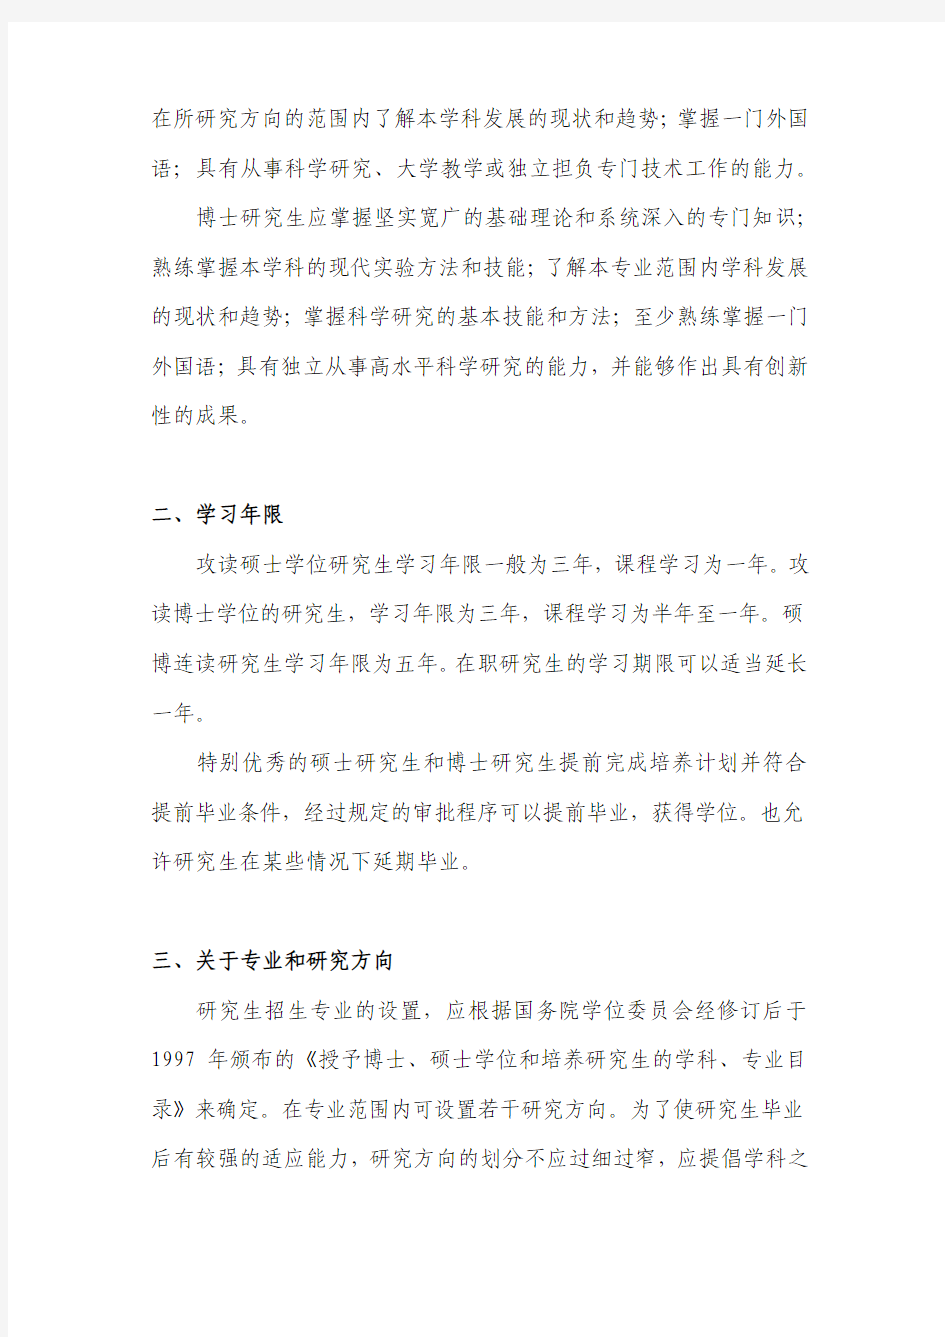 中国科学技术大学关于制定研究生培养方案的有关规定